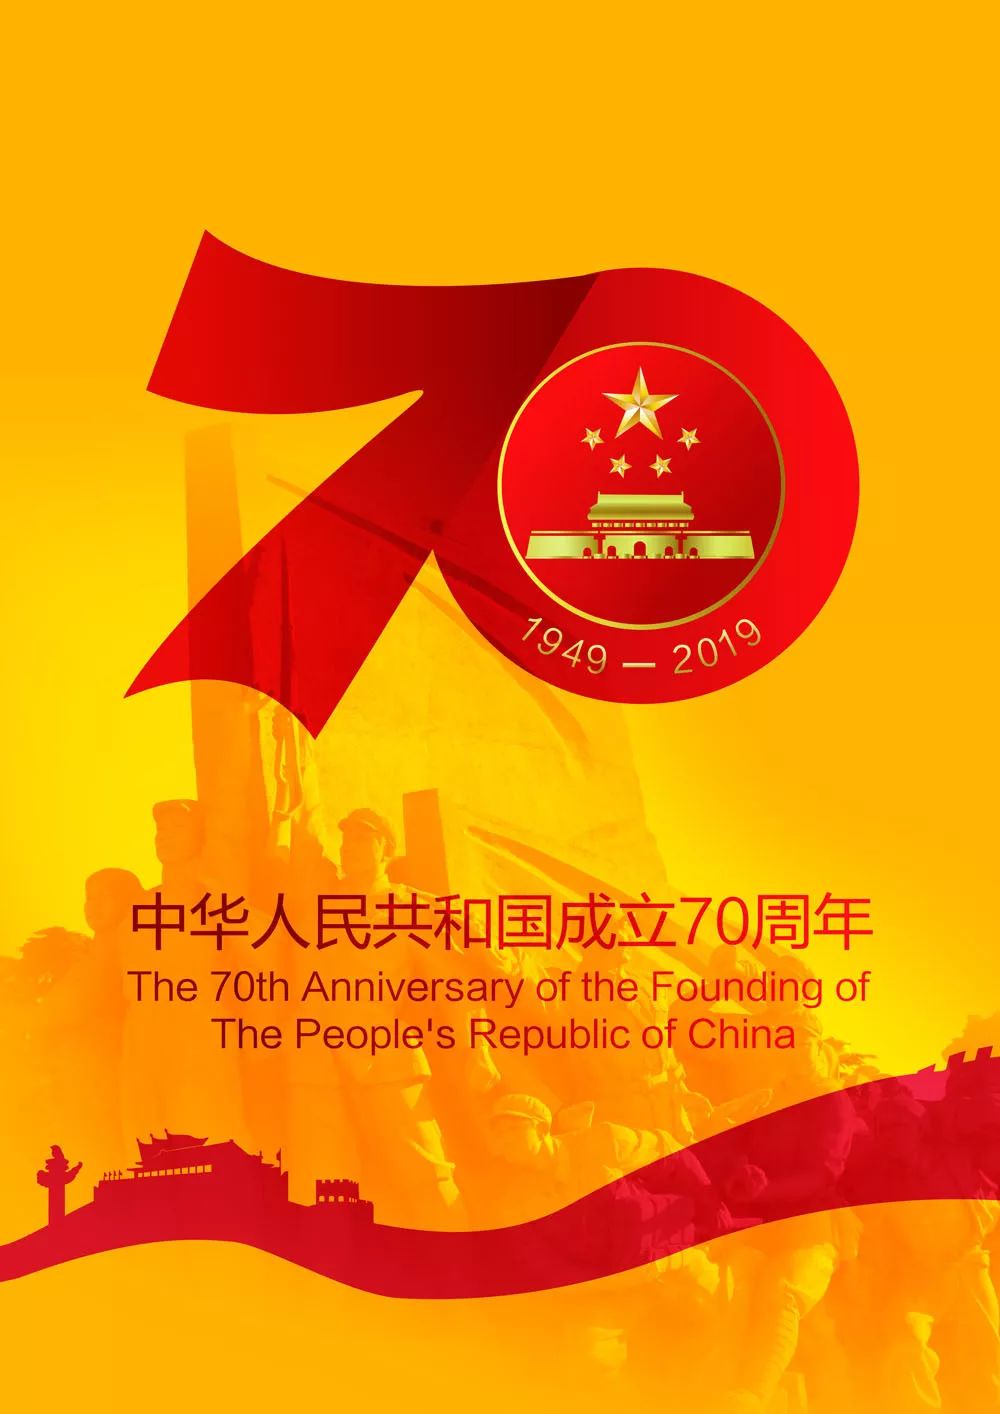 【公益】庆祝新中国成立70周年公益广告